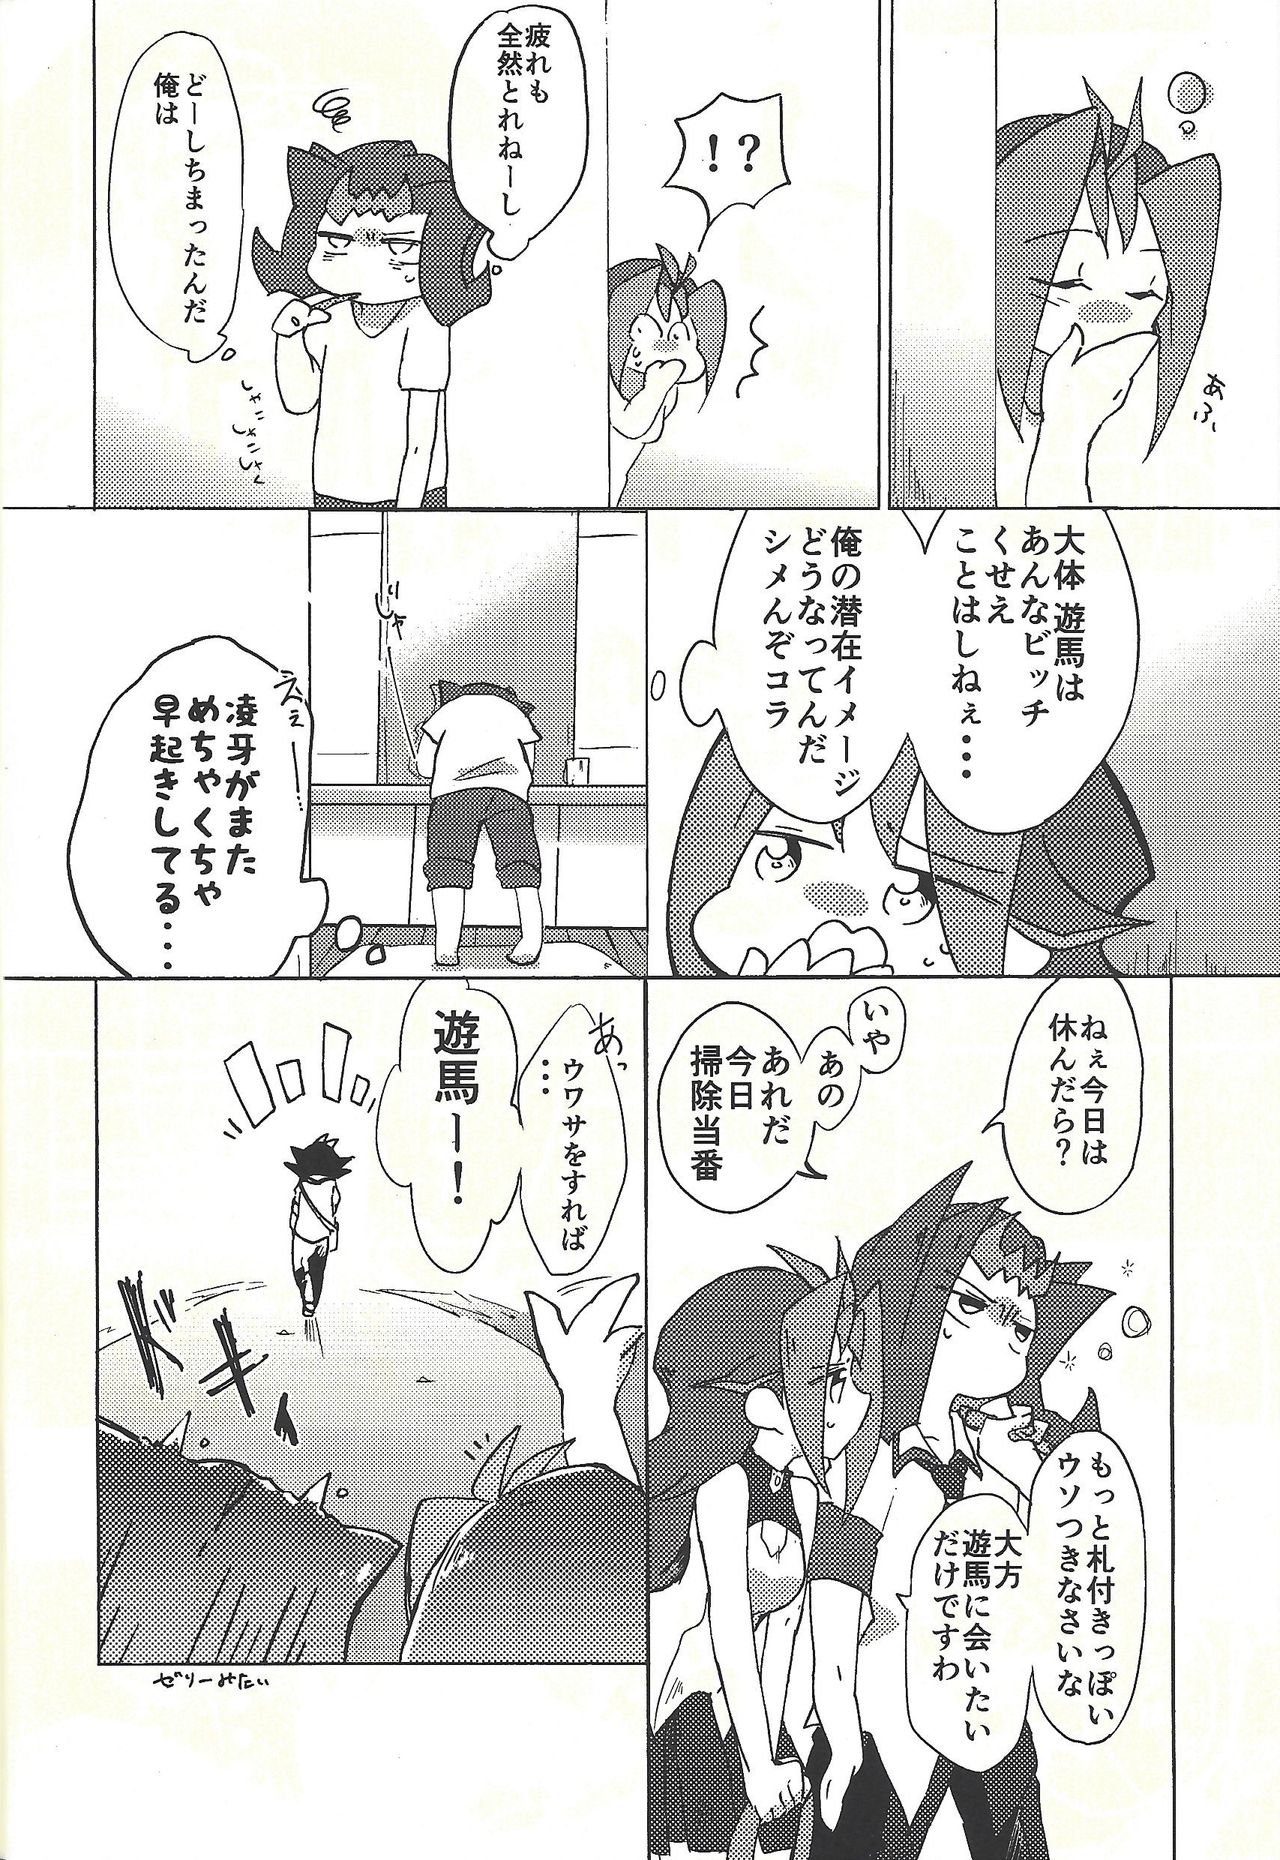 (Ore no Turn vs. 2019) [Wakaru mushi (623)] ☓ Yume resu fumin rēsu (Yu-Gi-Oh! ZEXAL) page 13 full